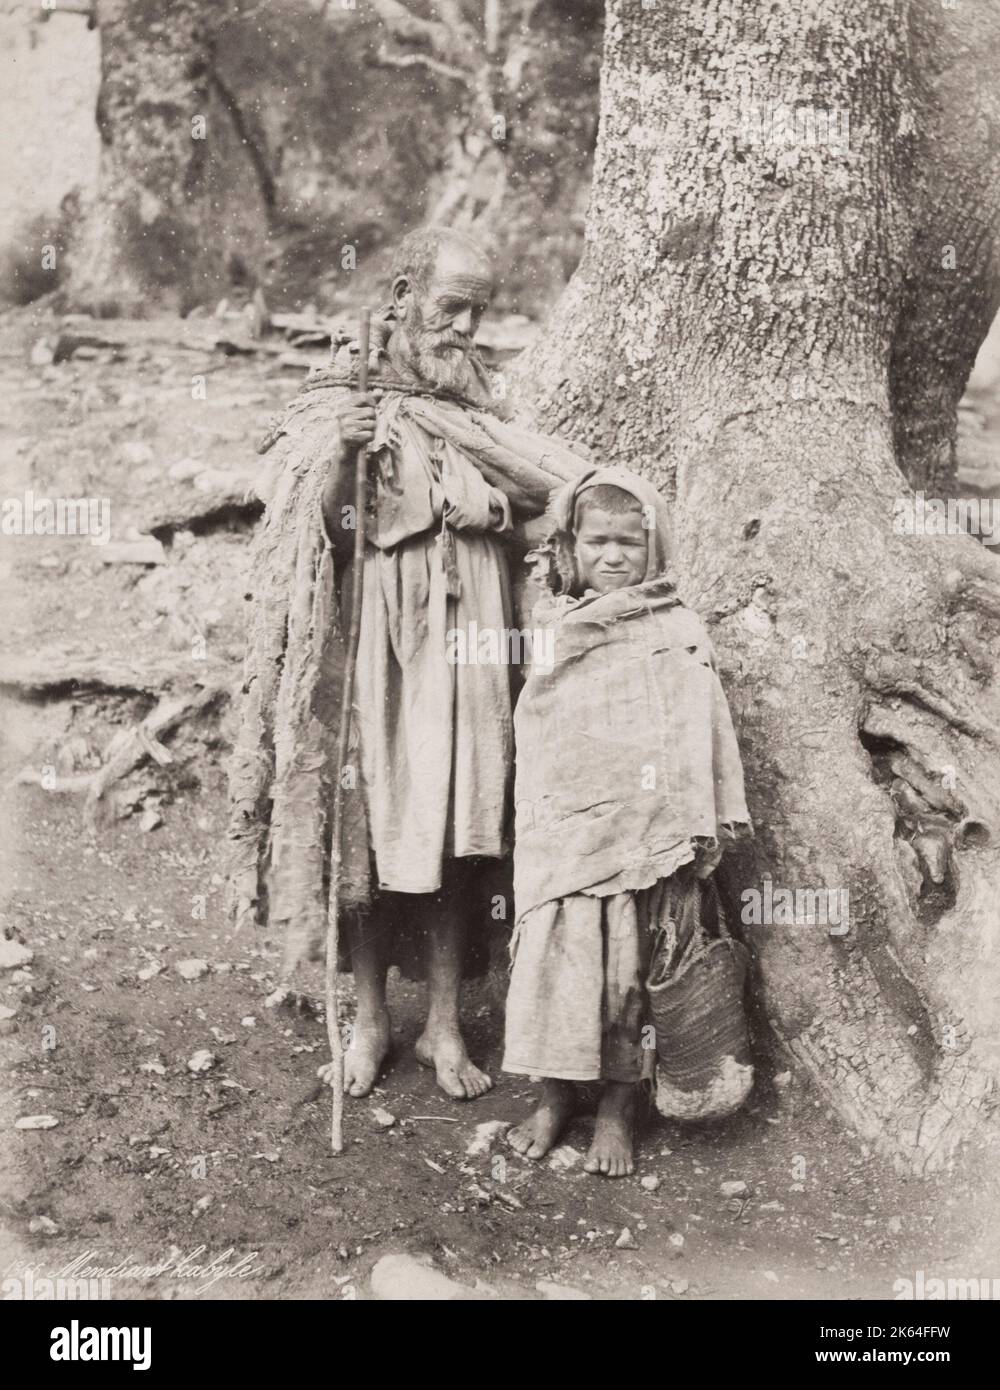 Photographie vintage du XIXe siècle : homme et enfant éederly mal habillé, Tunis, Tunisie, vers 1890. Banque D'Images